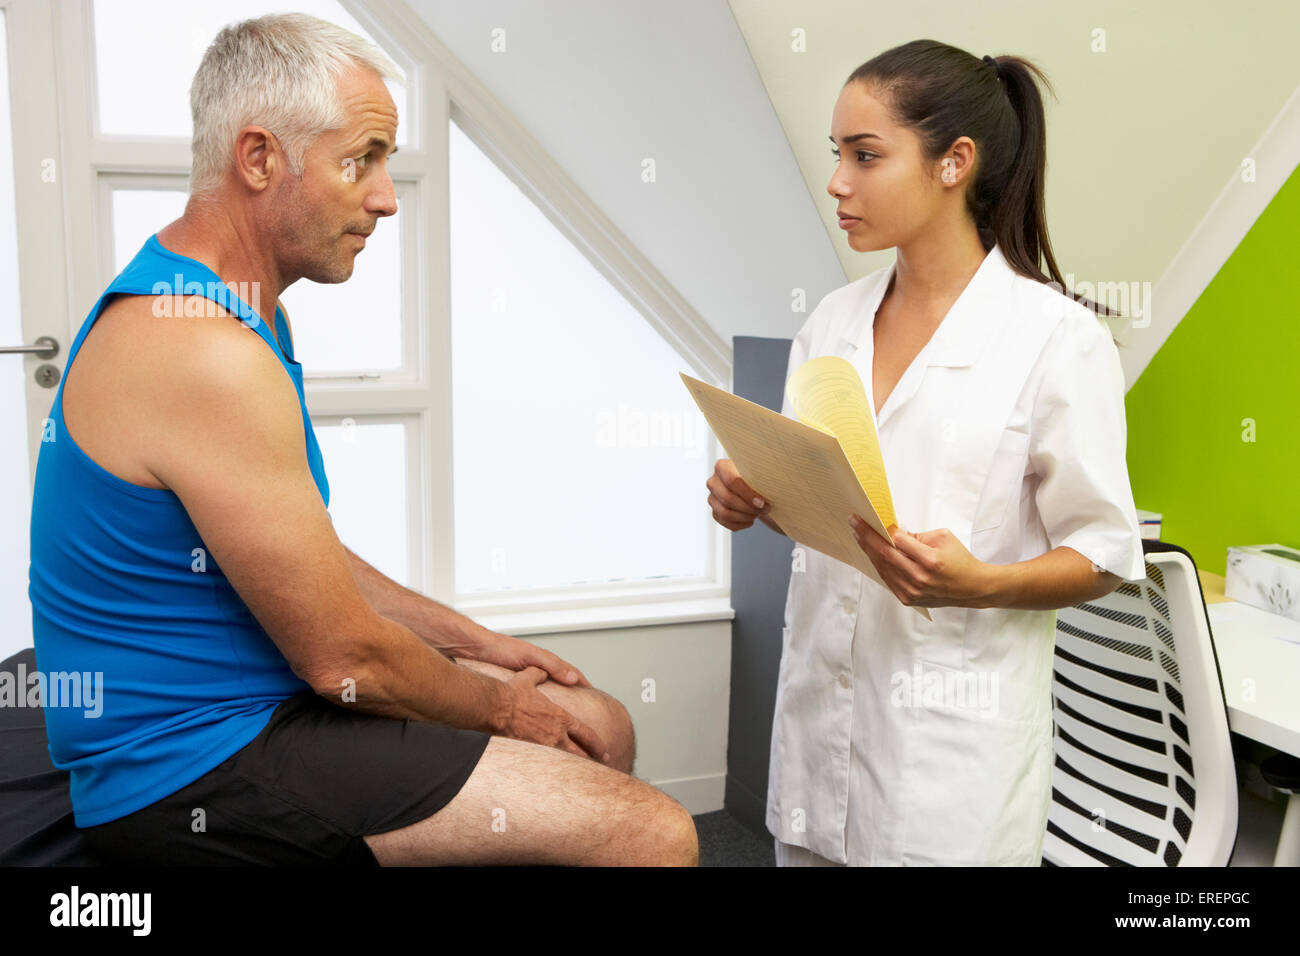 Sport Physiotherapeut Behandlung von männlichen Kunden Stockfoto